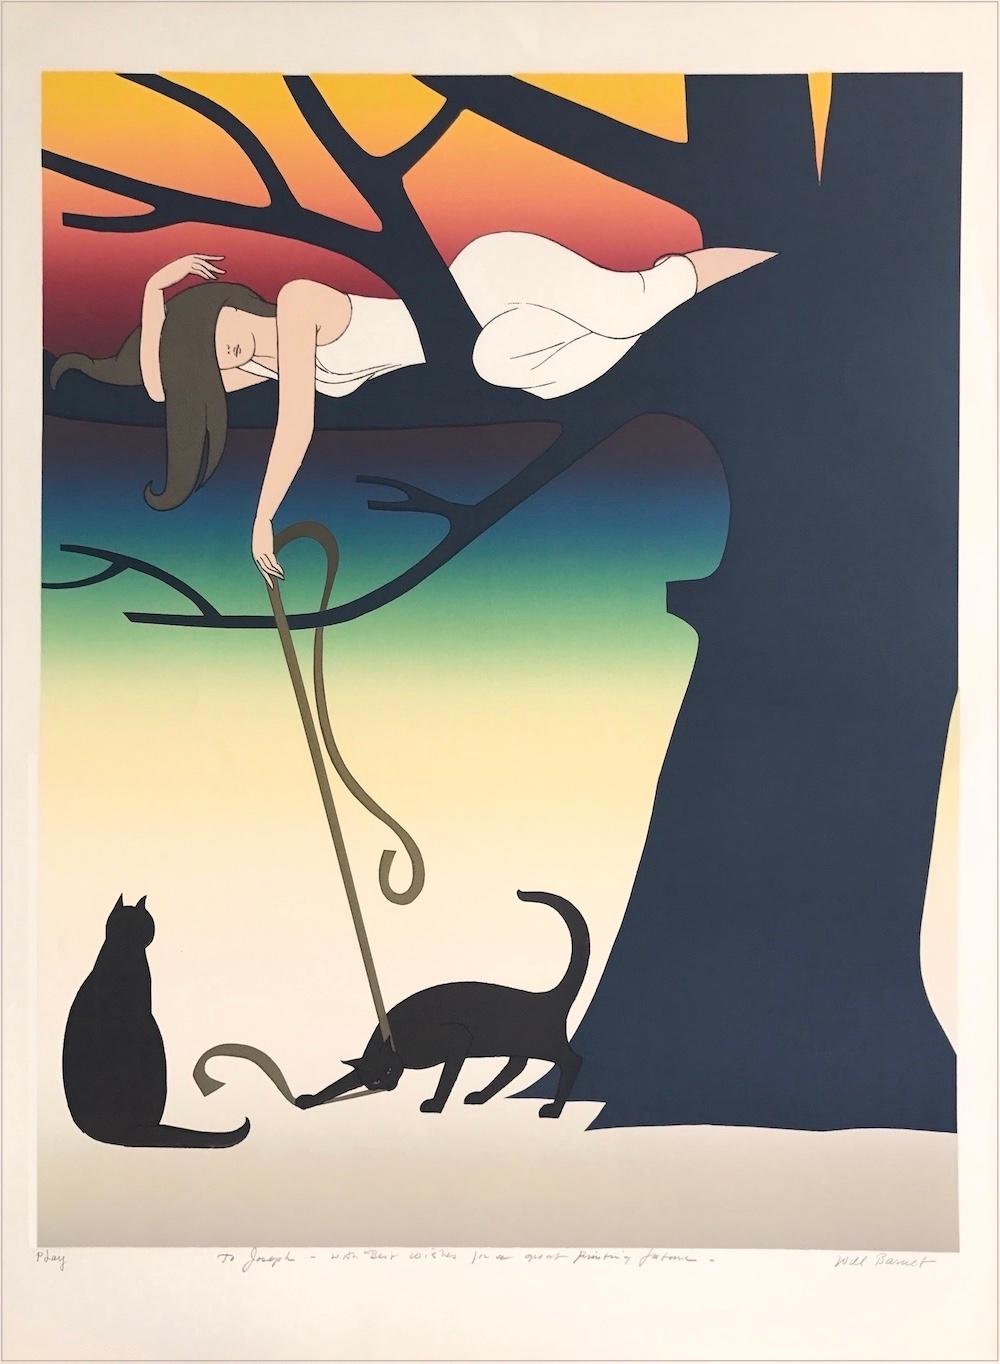 PLAY Lithographie signée, jeune femme dans un arbre jouant avec des chats, coucher de soleil arc-en-ciel